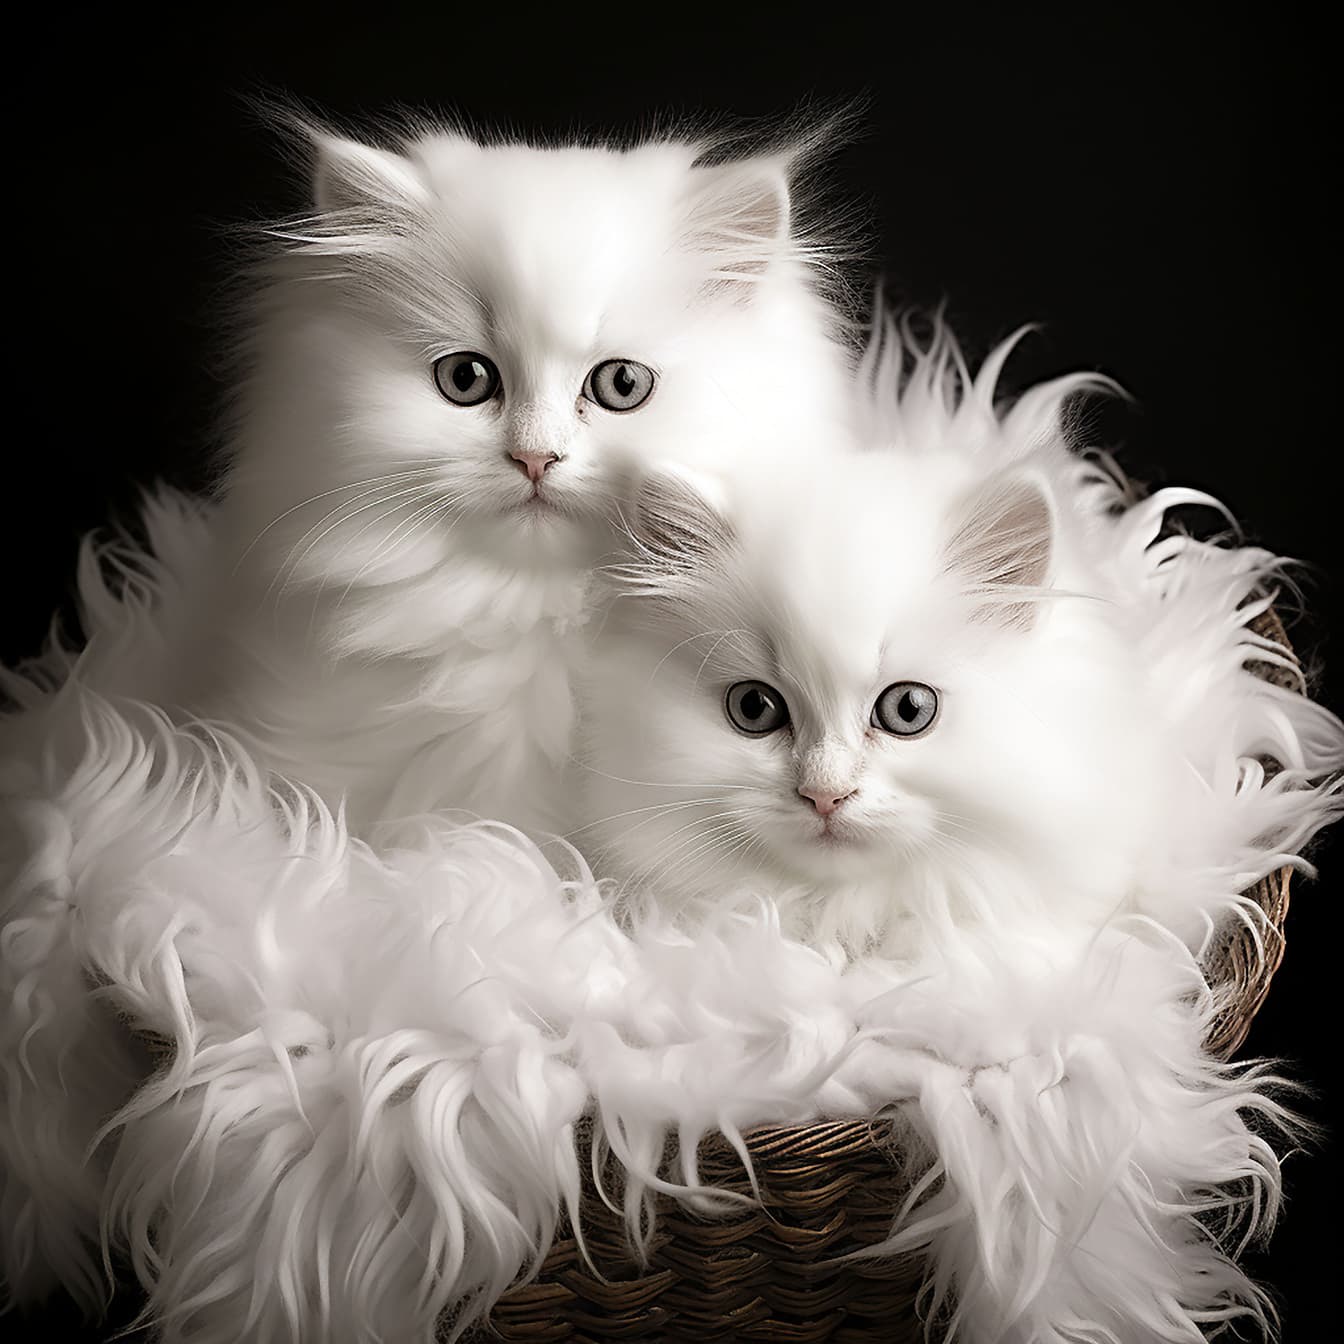 Gatinhos peludos brancos sentados na ilustração da cesta de vime